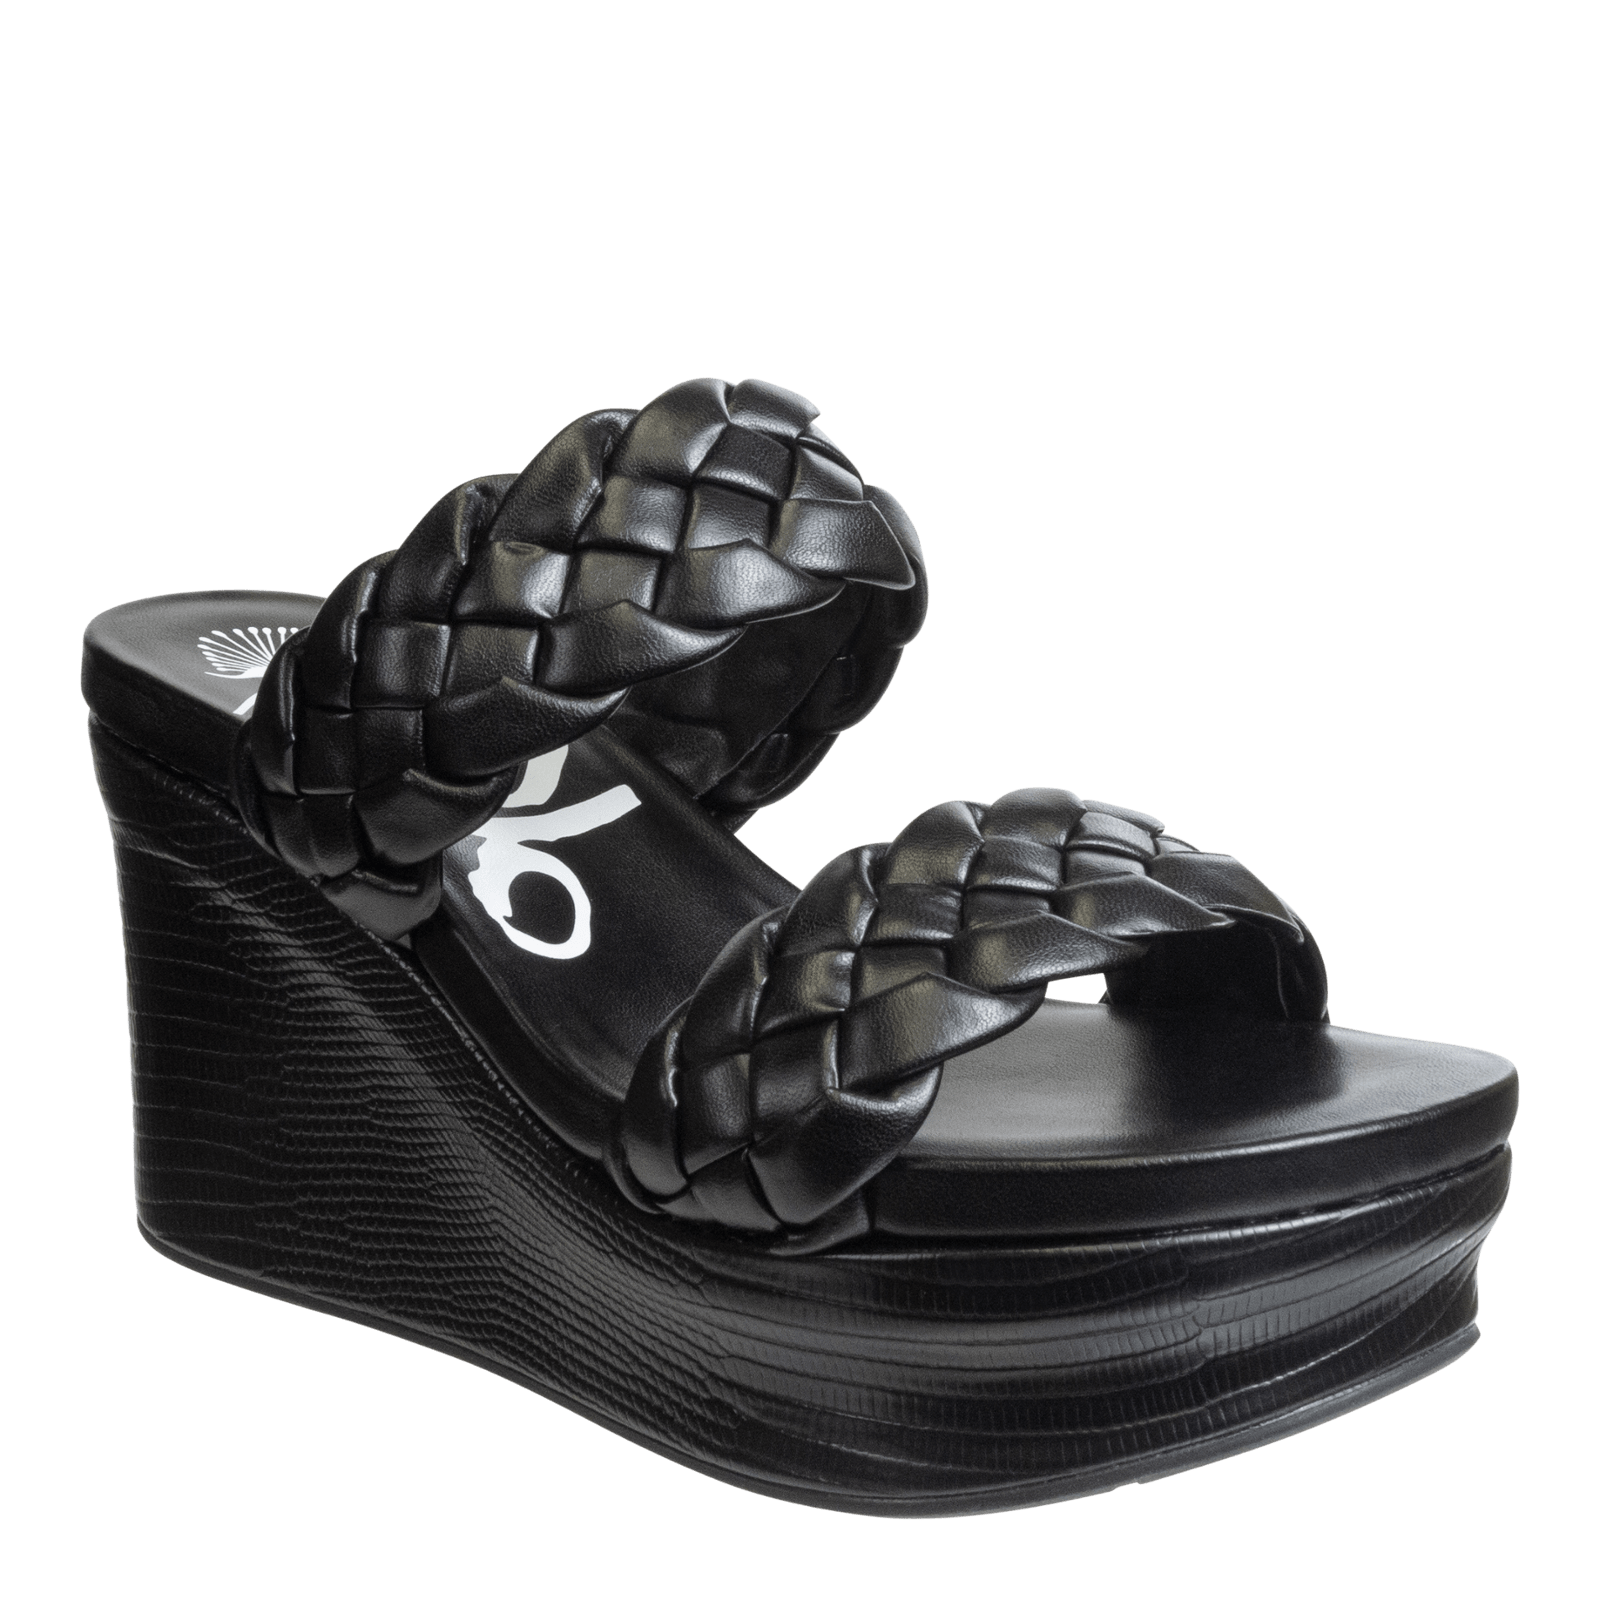 FLUENT in BLACK Wedge Sandals